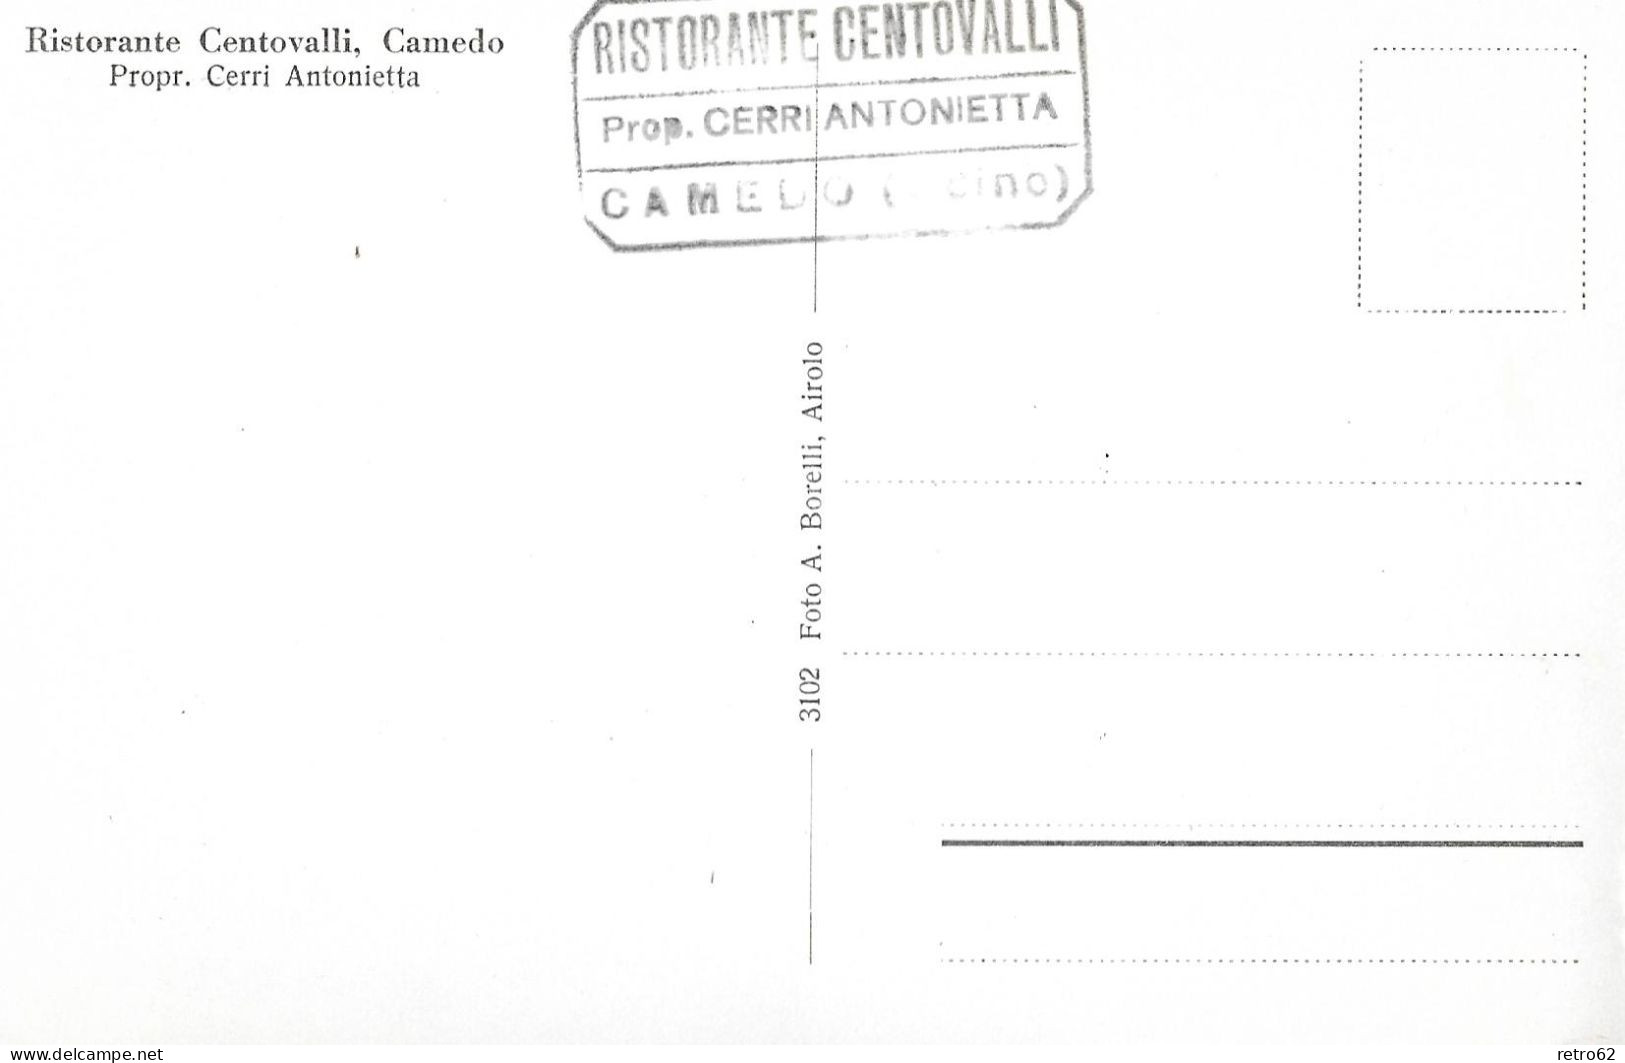 CAMEDO ► Camedo Ist Ein Ortsteil In Der Politischen Gemeinde Centovalli, Mit Hotelstempel Ristorante Centovalli, Ca.1950 - Centovalli